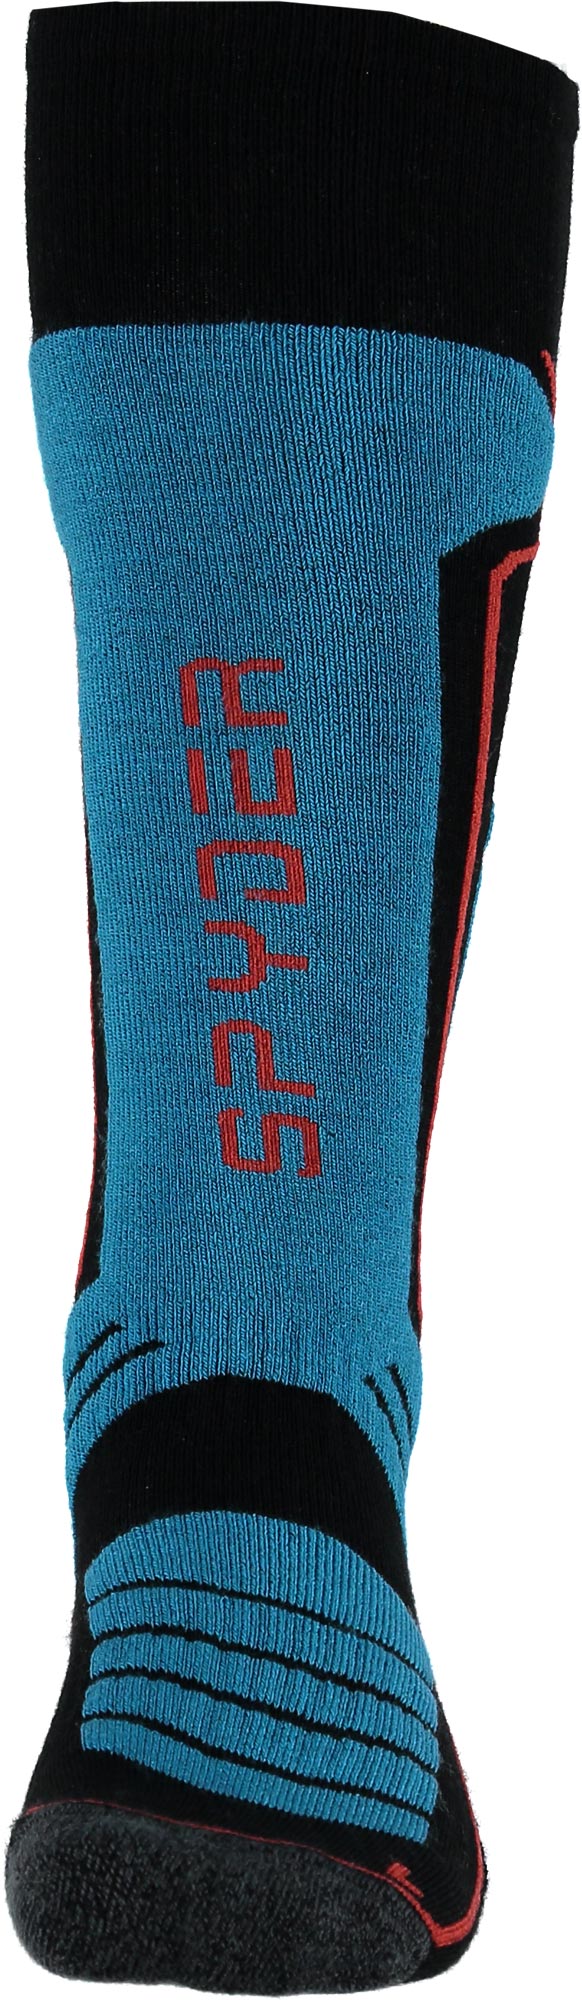 Men’s sports socks